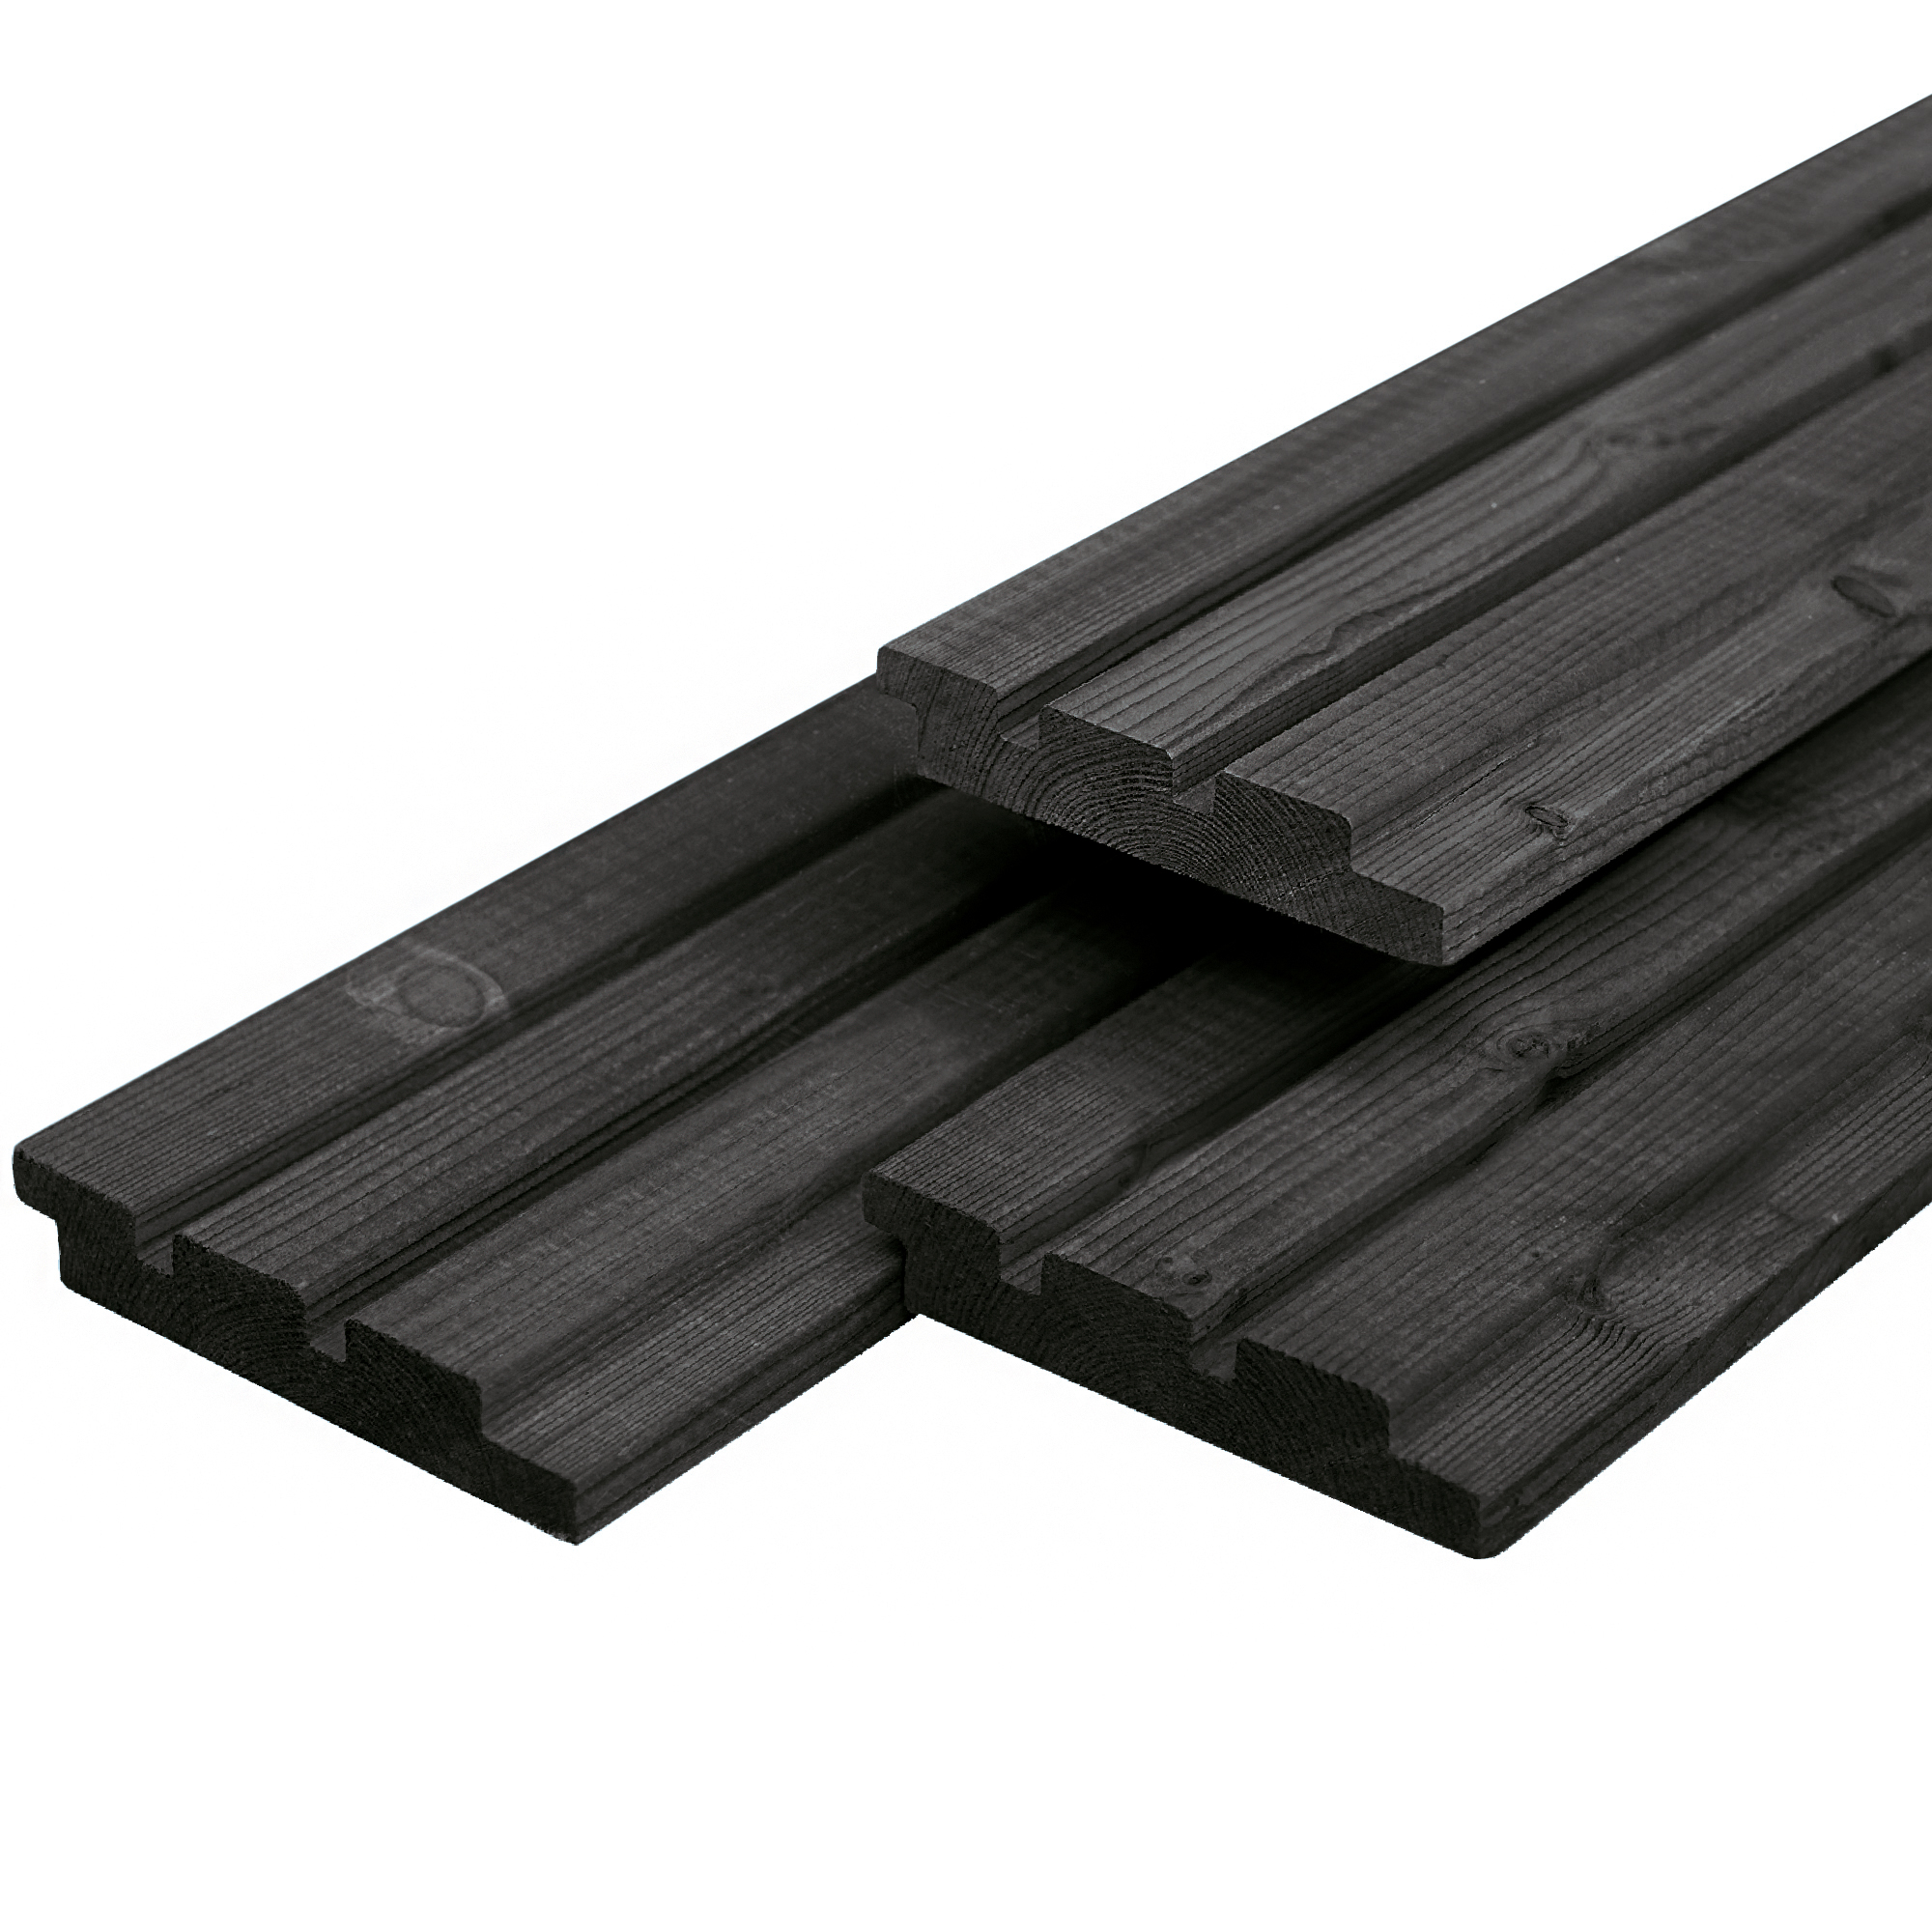 Dreifach-Profilholz aus Douglasie schwarz gespritzt 1.9x13.0x490cm